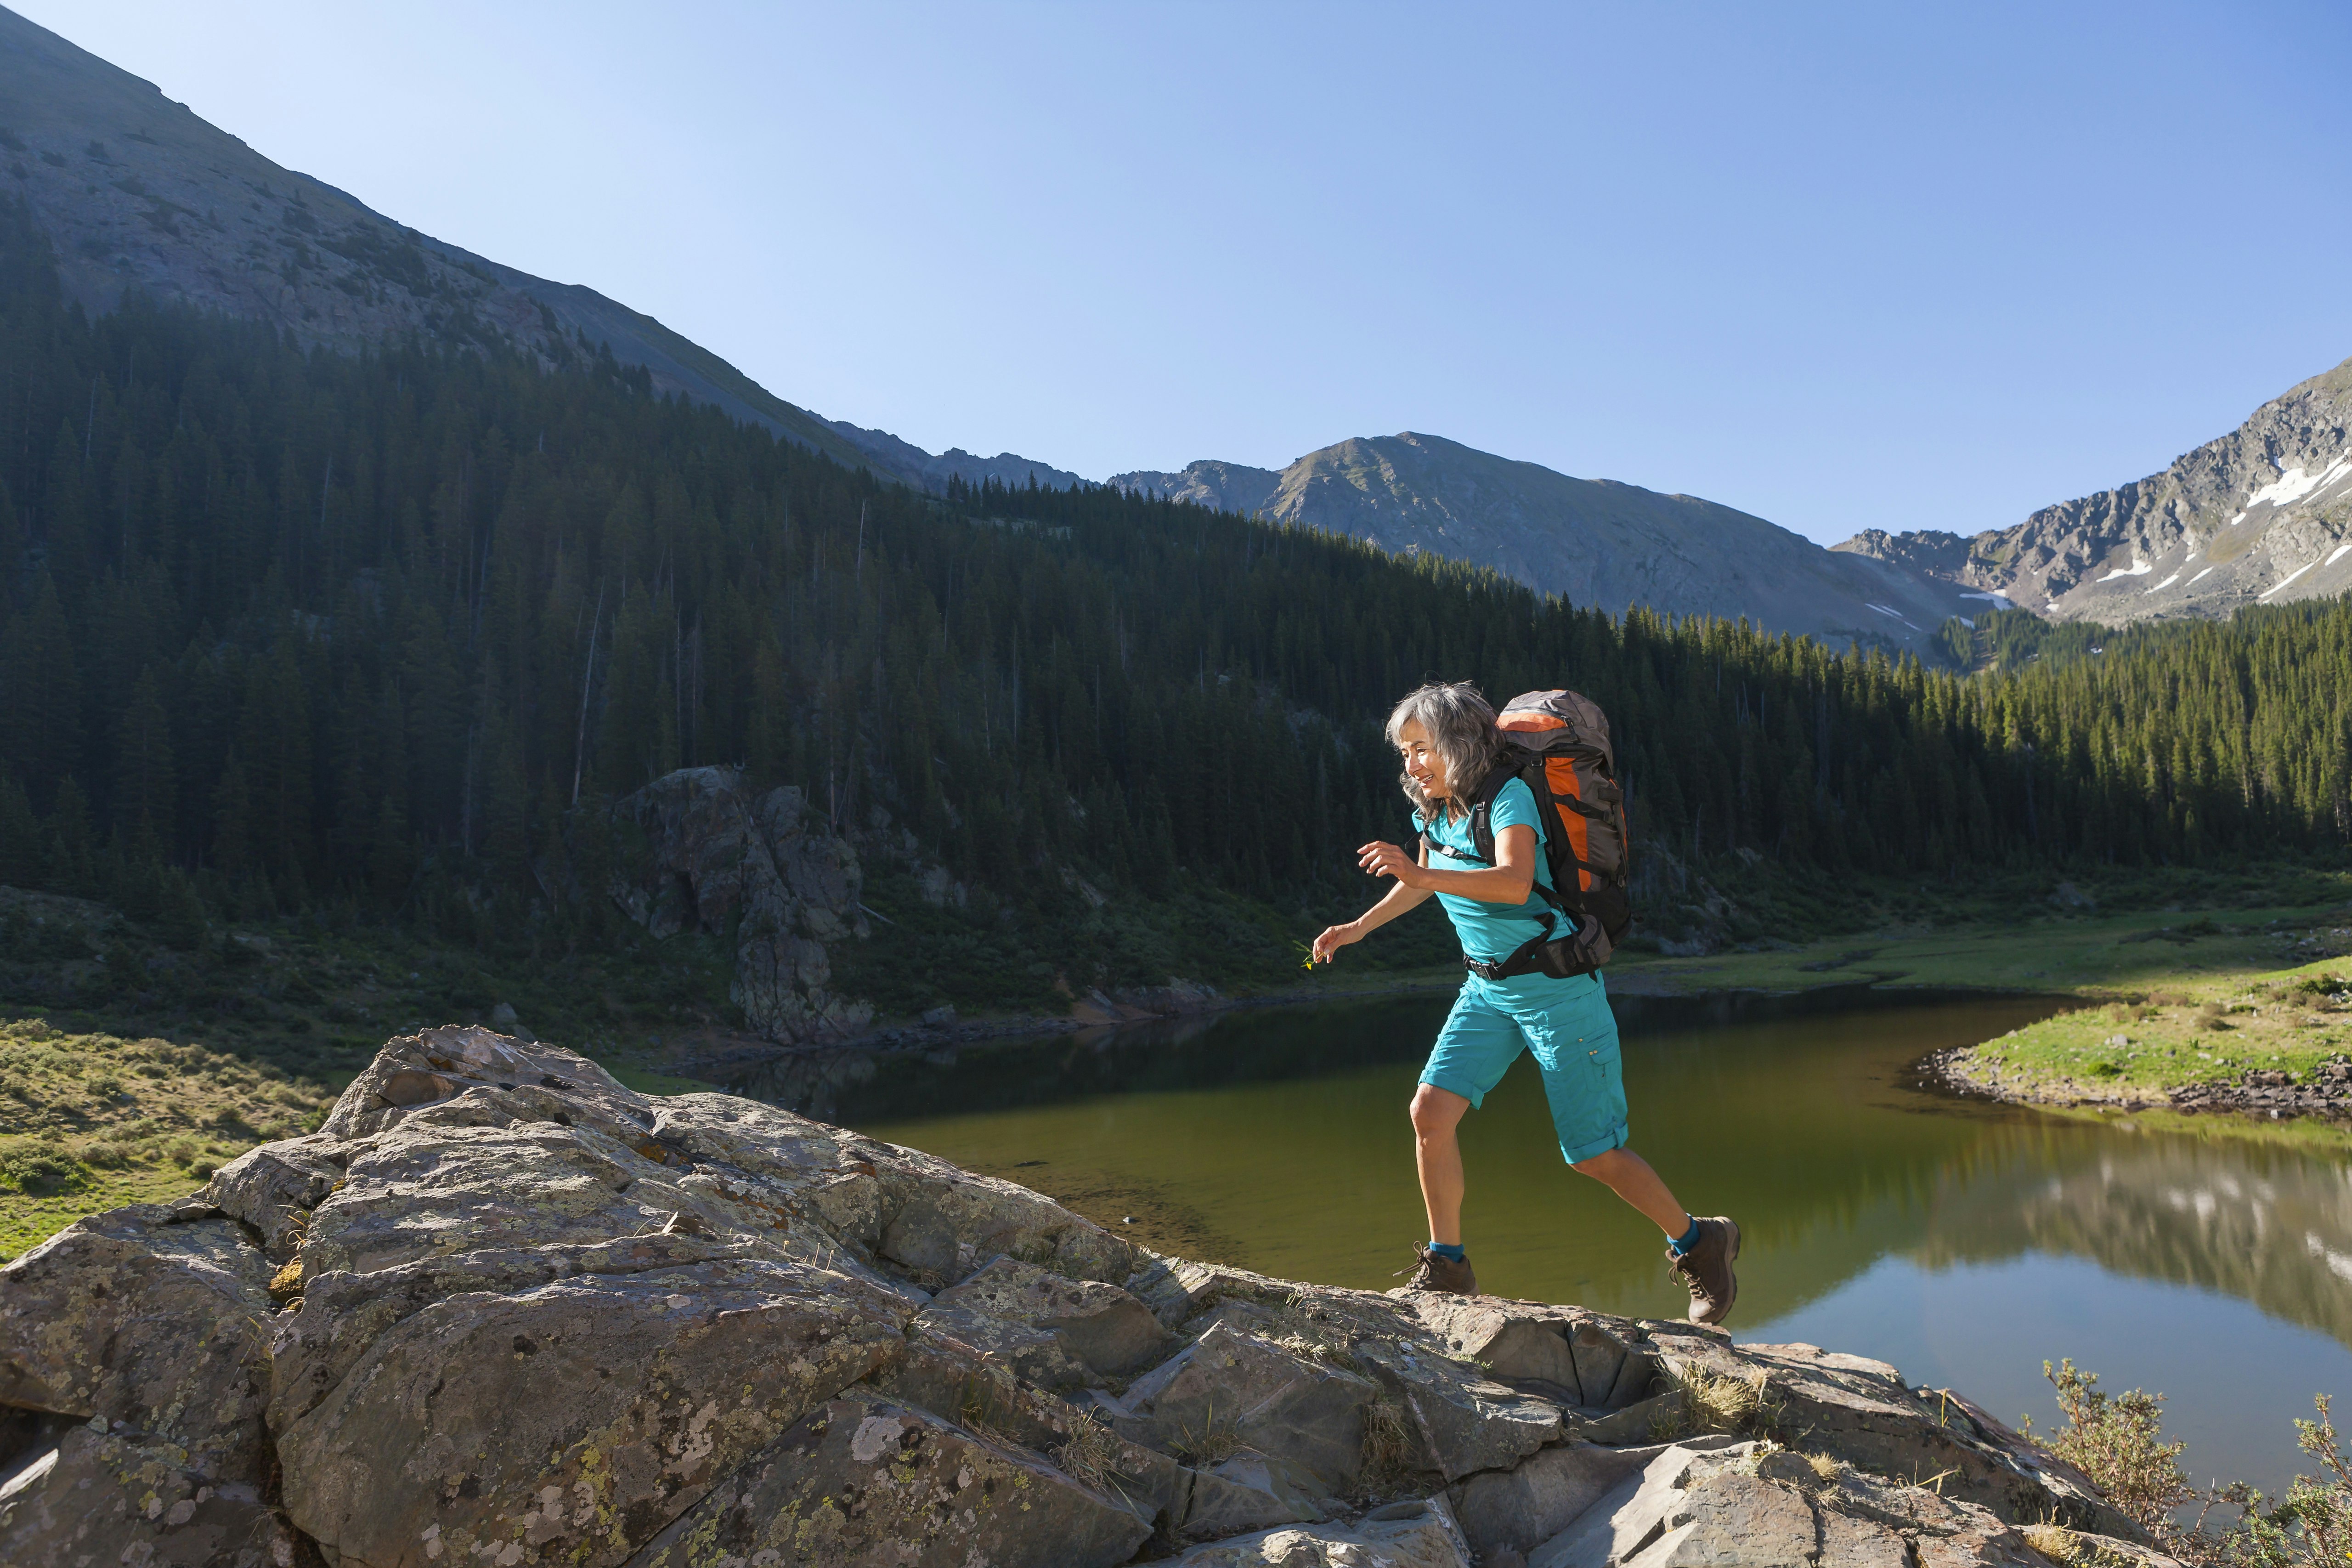 A woman hiking on a boulder near a lake